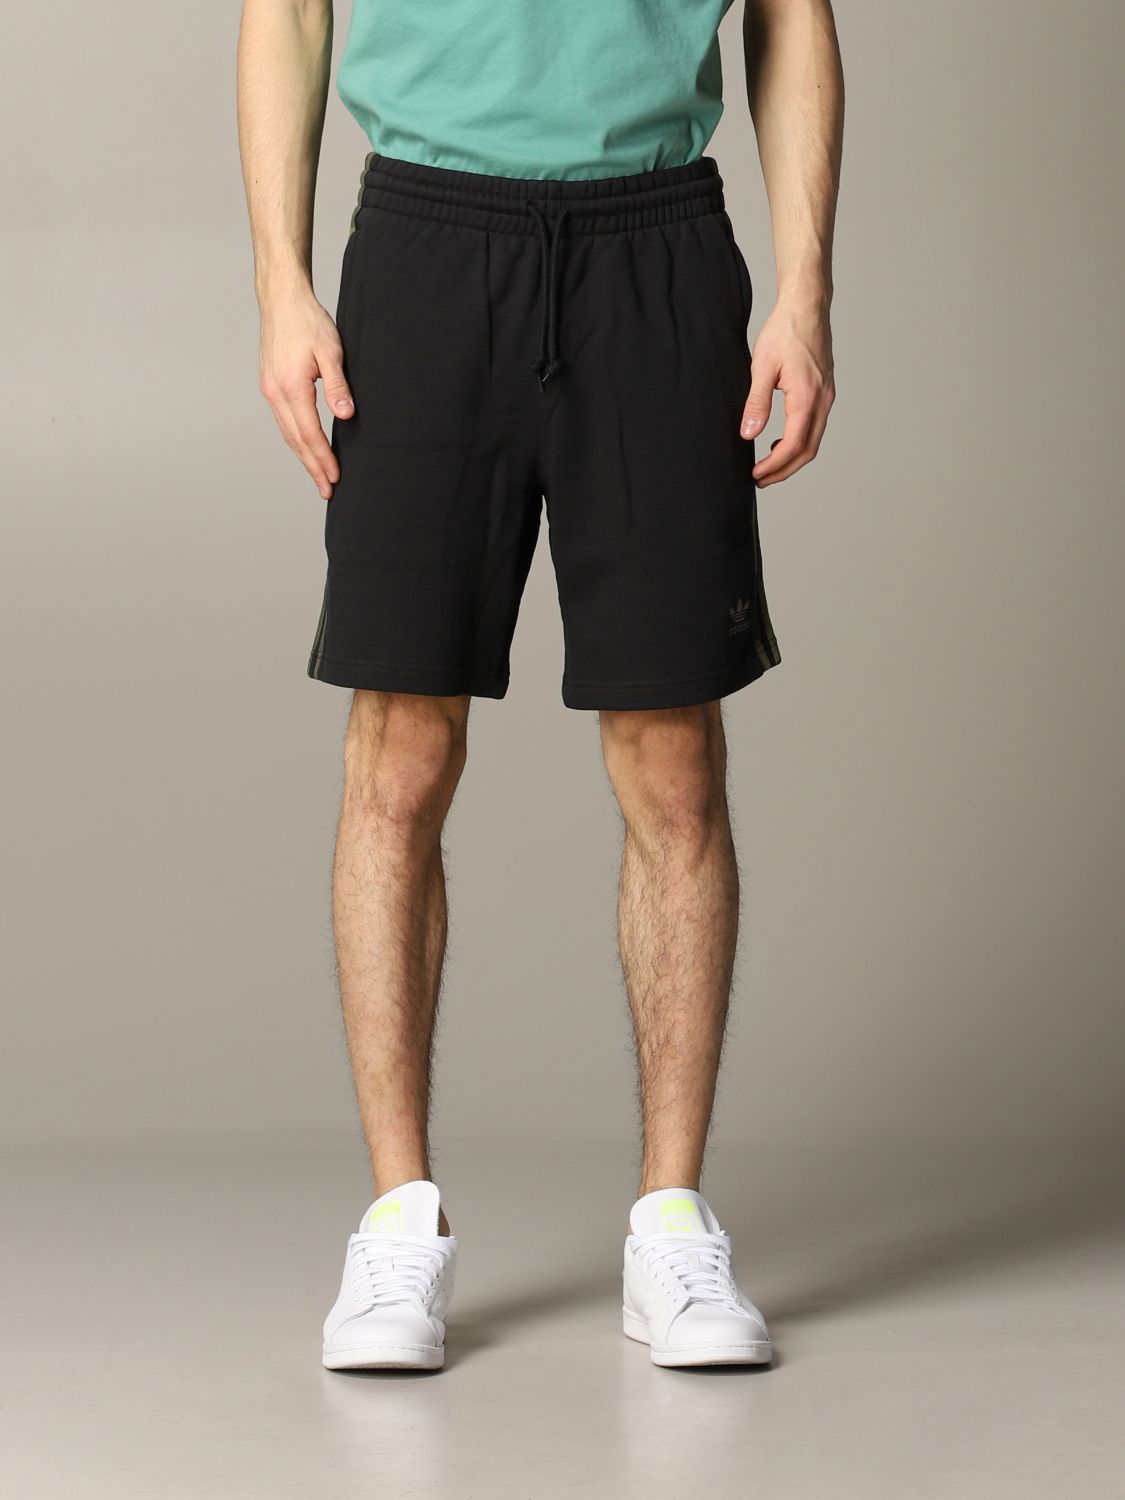 adidas originals short shorts mens